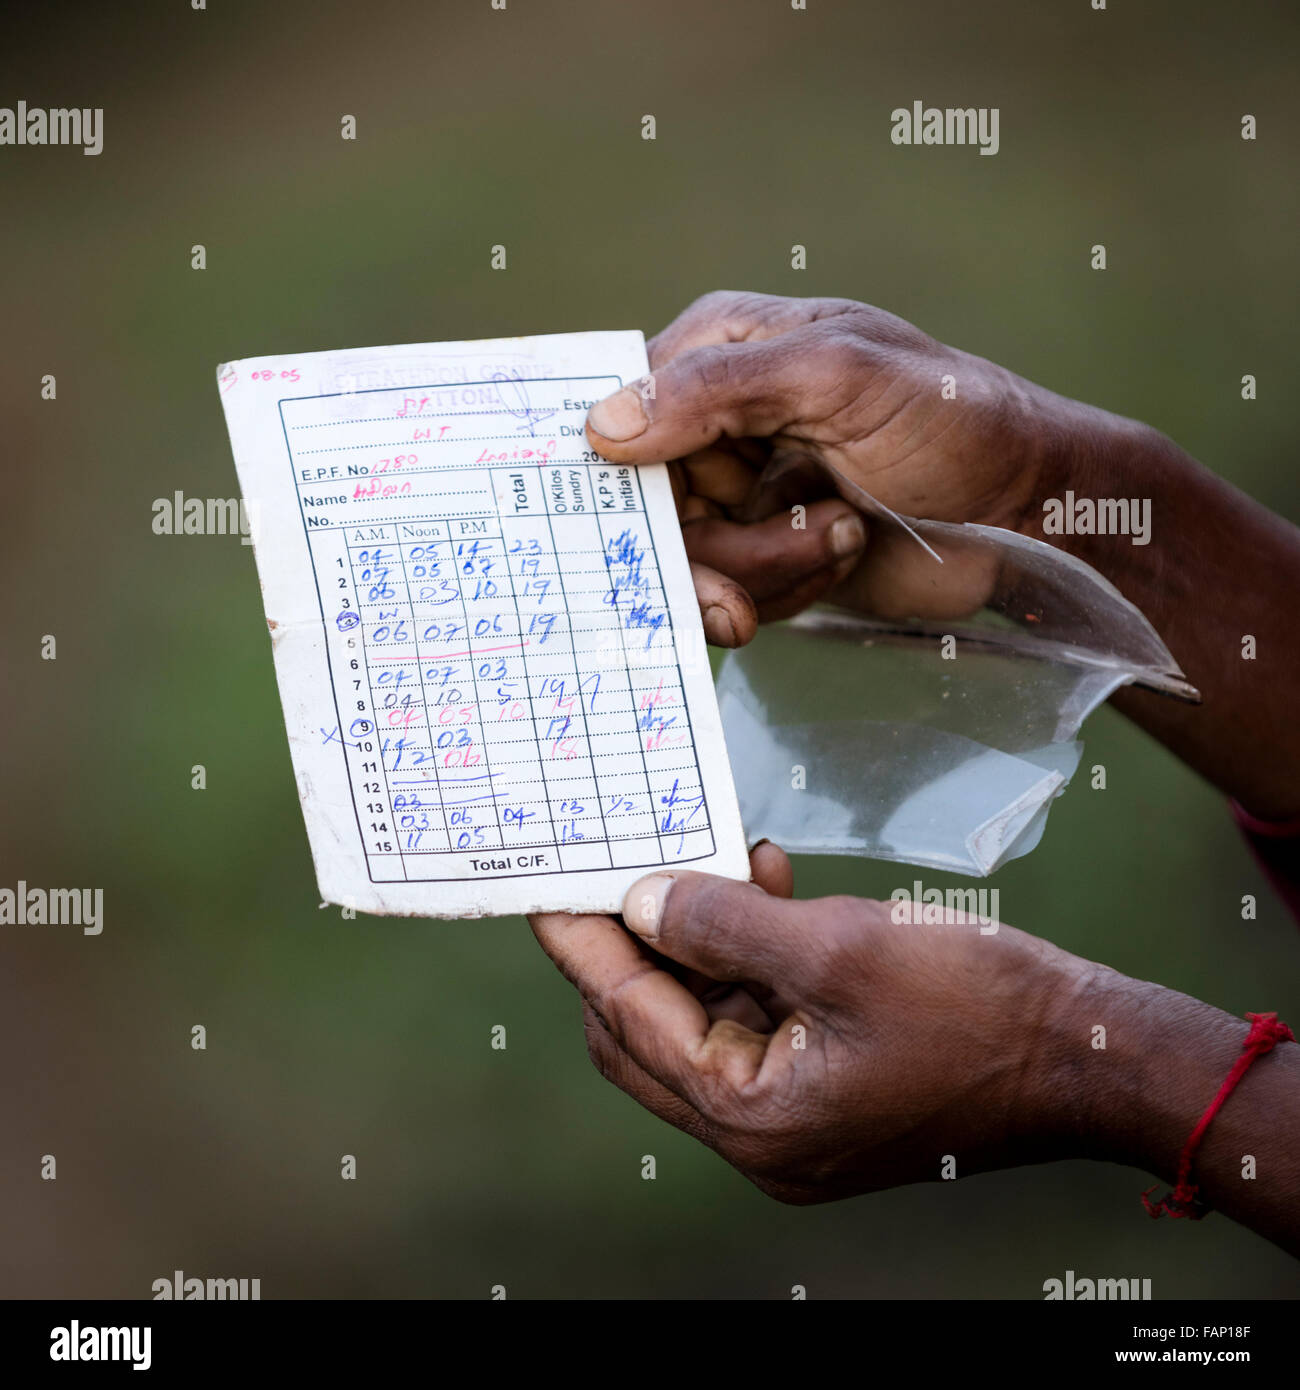 Hände einer Tee-Auswahl in Sri Lanka Karte Aufnahme Gewicht Tee gepflückt halten. Diese Auflistung wird verwendet, um Löhne zu bestimmen. Stockfoto